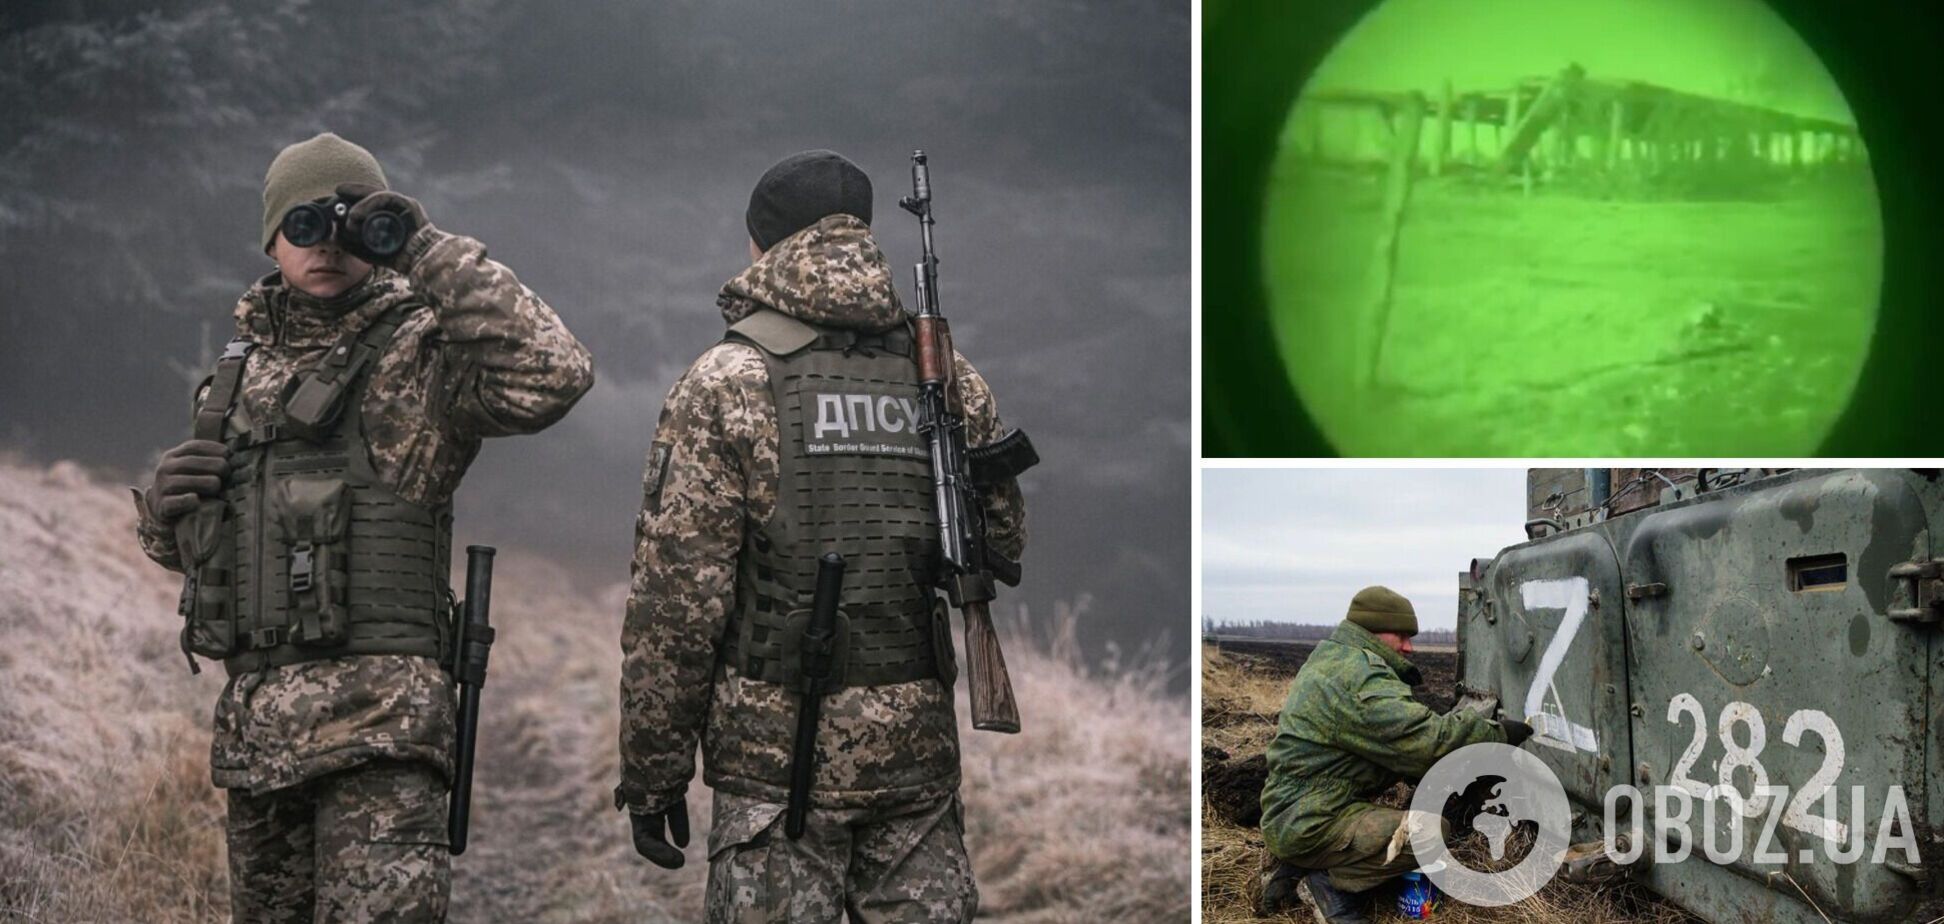 'Ночь – лучшее время для охоты': украинские пограничники рассказали о ликвидации оккупантов на Донбассе